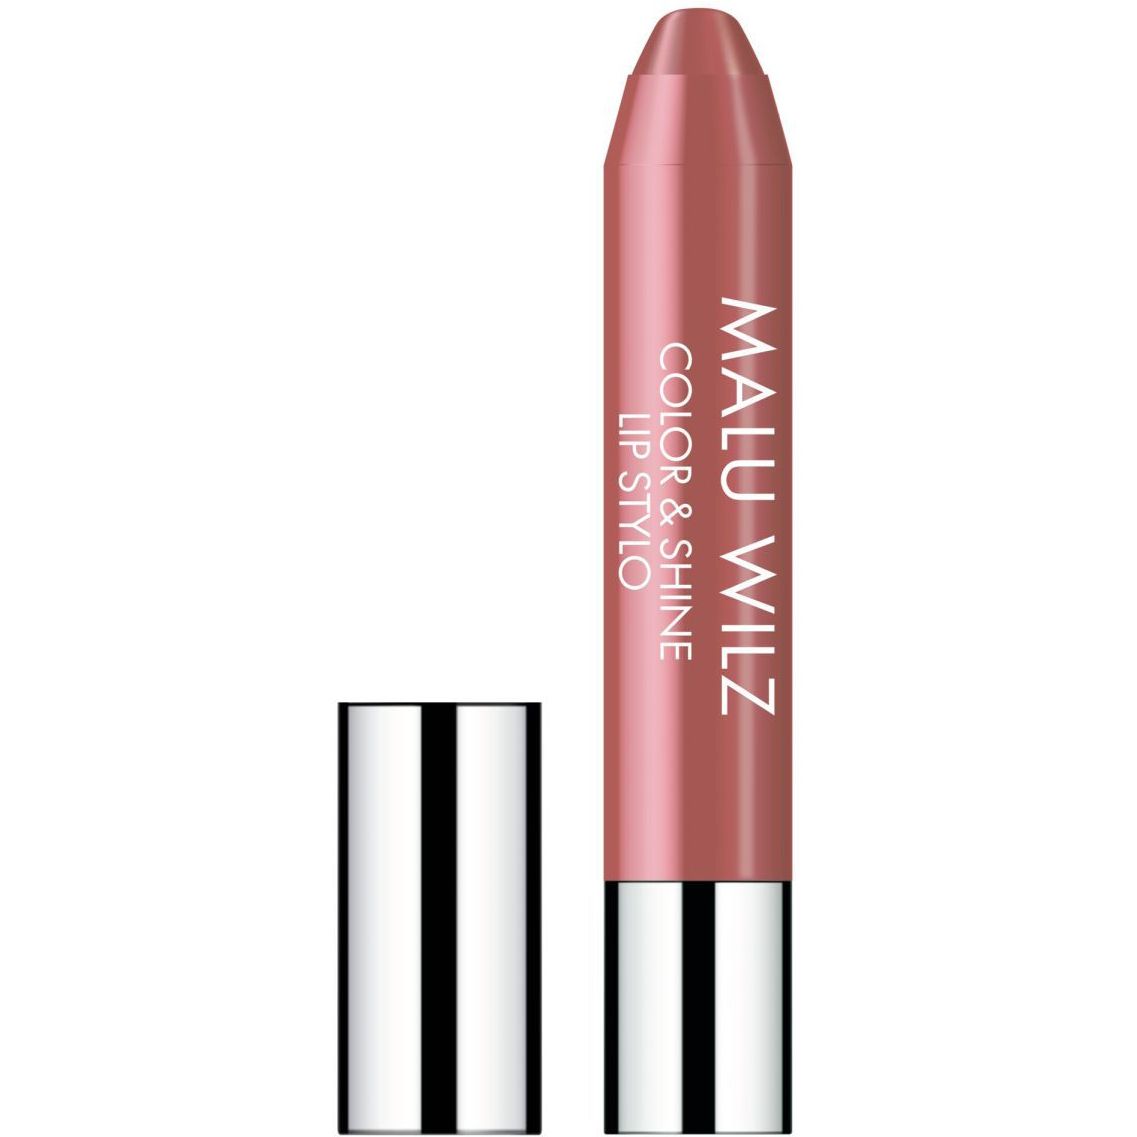 Увлажняющая губная помада Malu Wilz Color&Shine Lip Stylo, тон 10 (ниндально-розовый), 11 г - фото 1